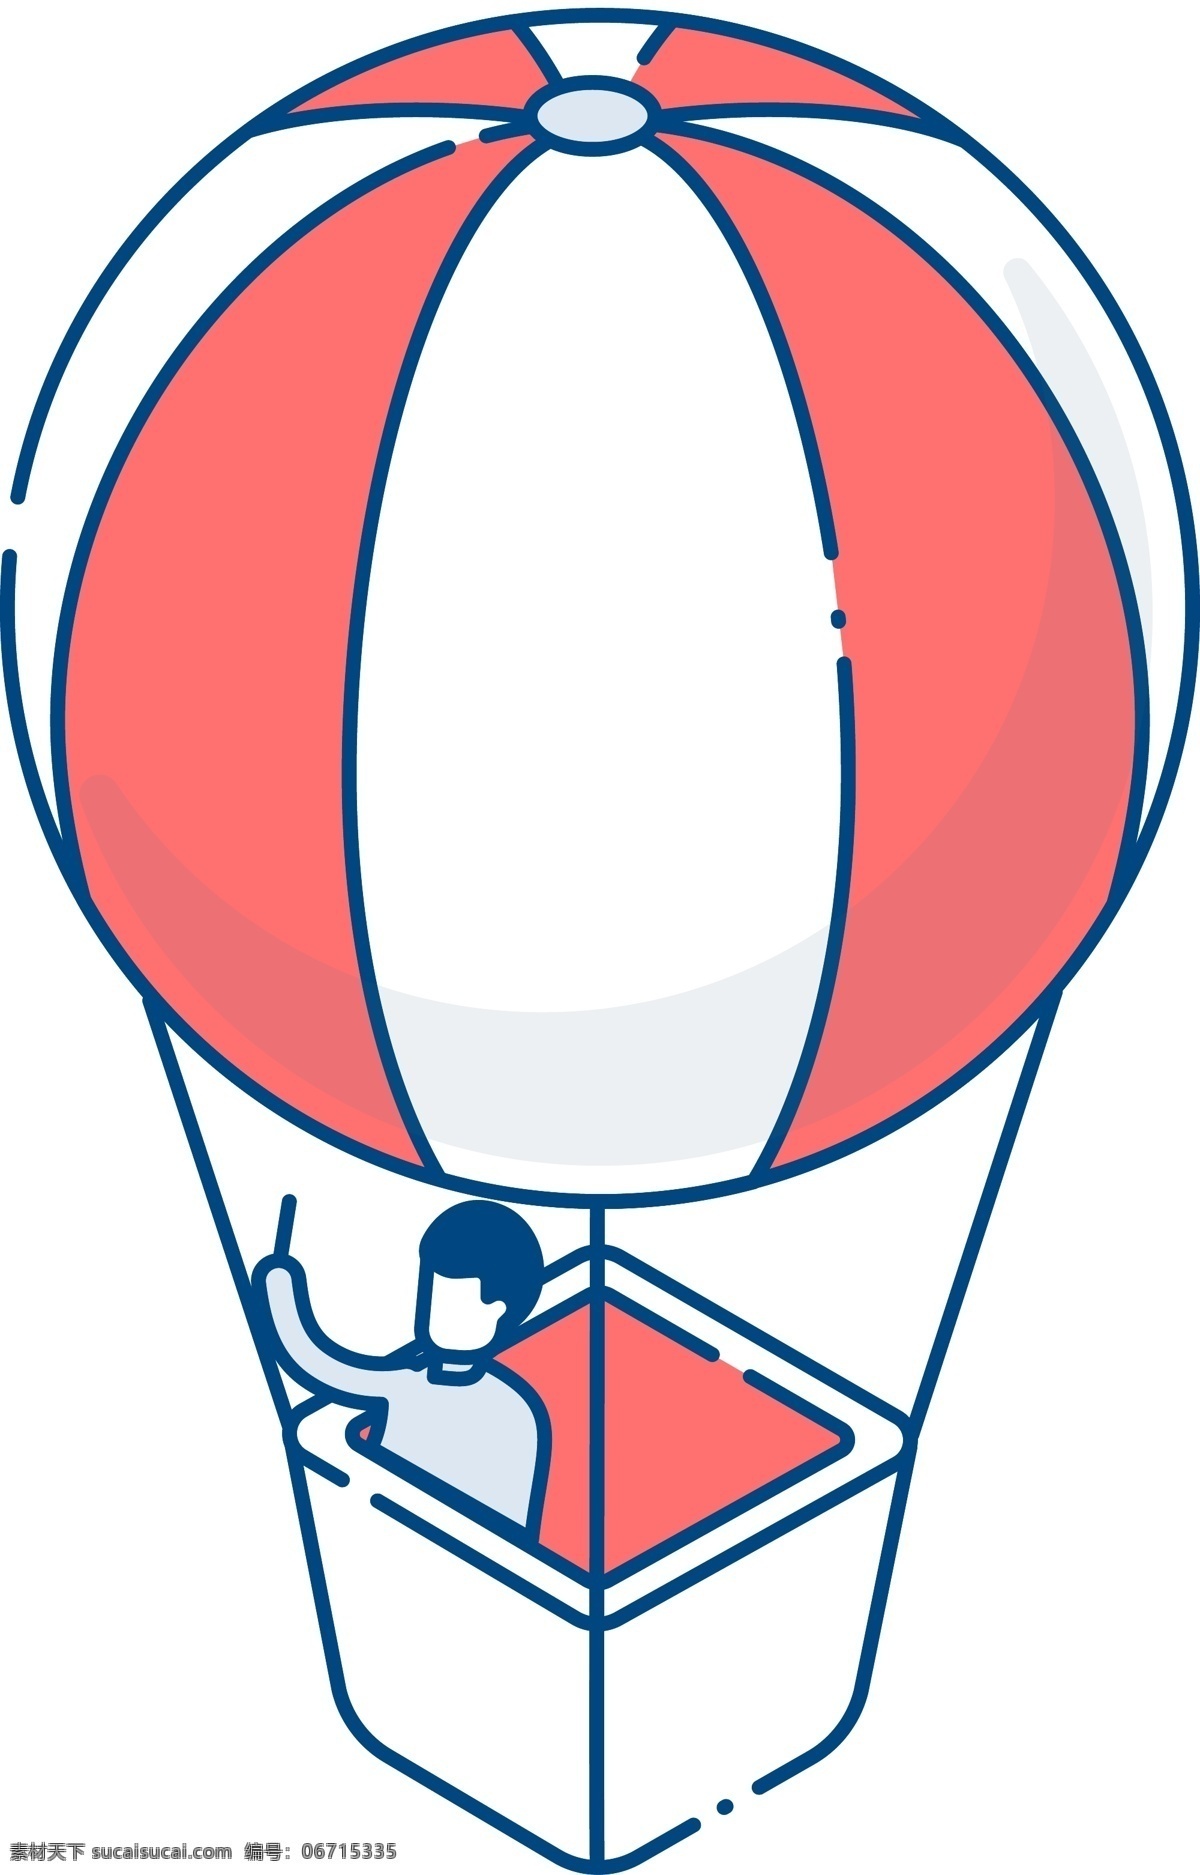 d 立体 热气球 轴 测 图 2.5d 轴测图 插画设计 可爱 小清新 少女 卡通